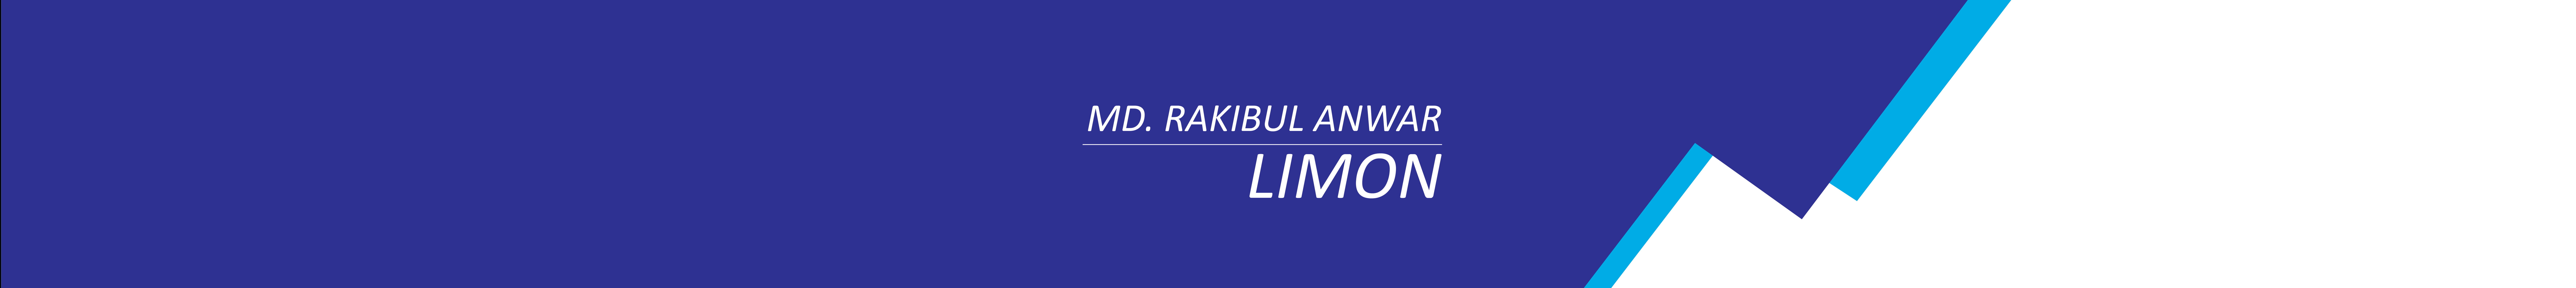 Bannière de profil de Md Rakibul Anwar (Limon)